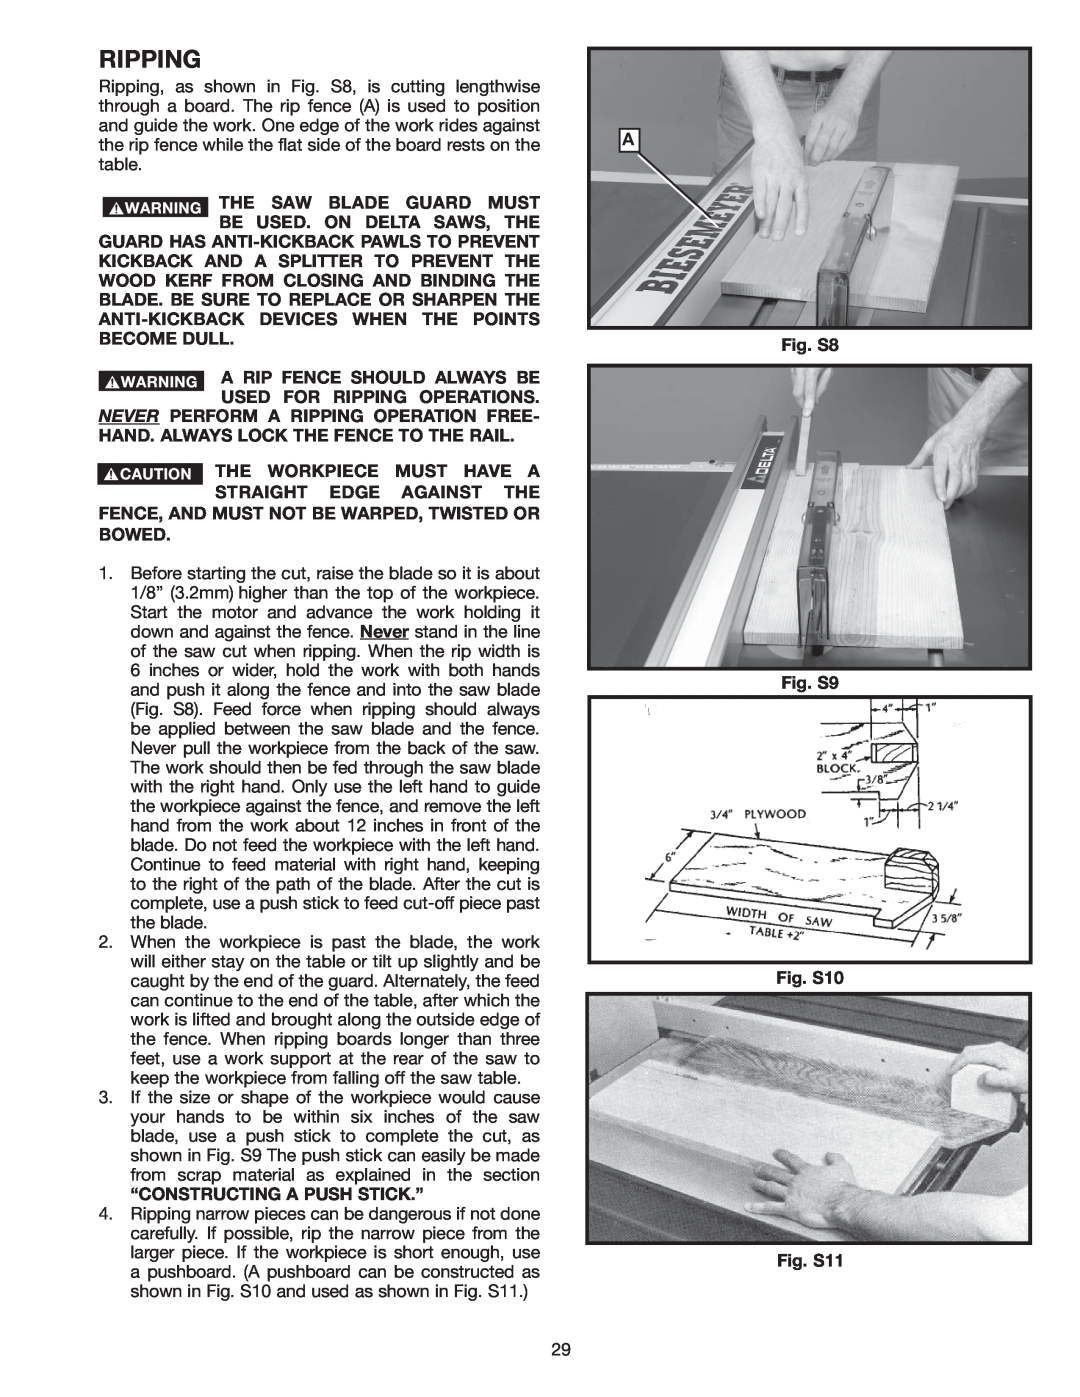 Delta 36-978 instruction manual Ripping 